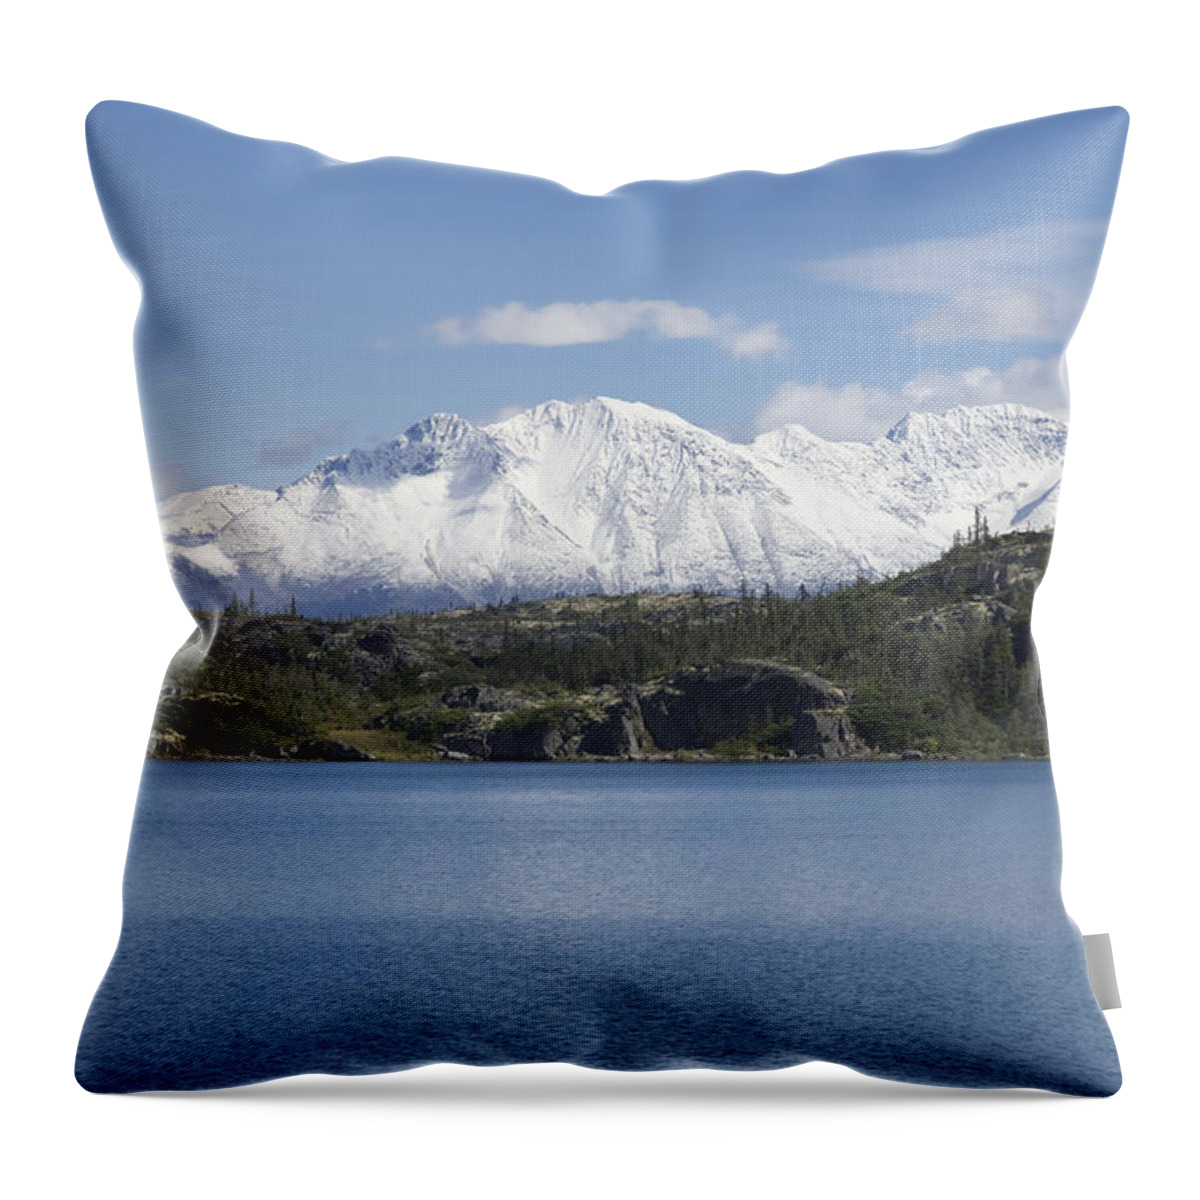 Stikine Mountains Throw Pillow featuring the photograph Stikine Mountains 7 by Richard J Cassato